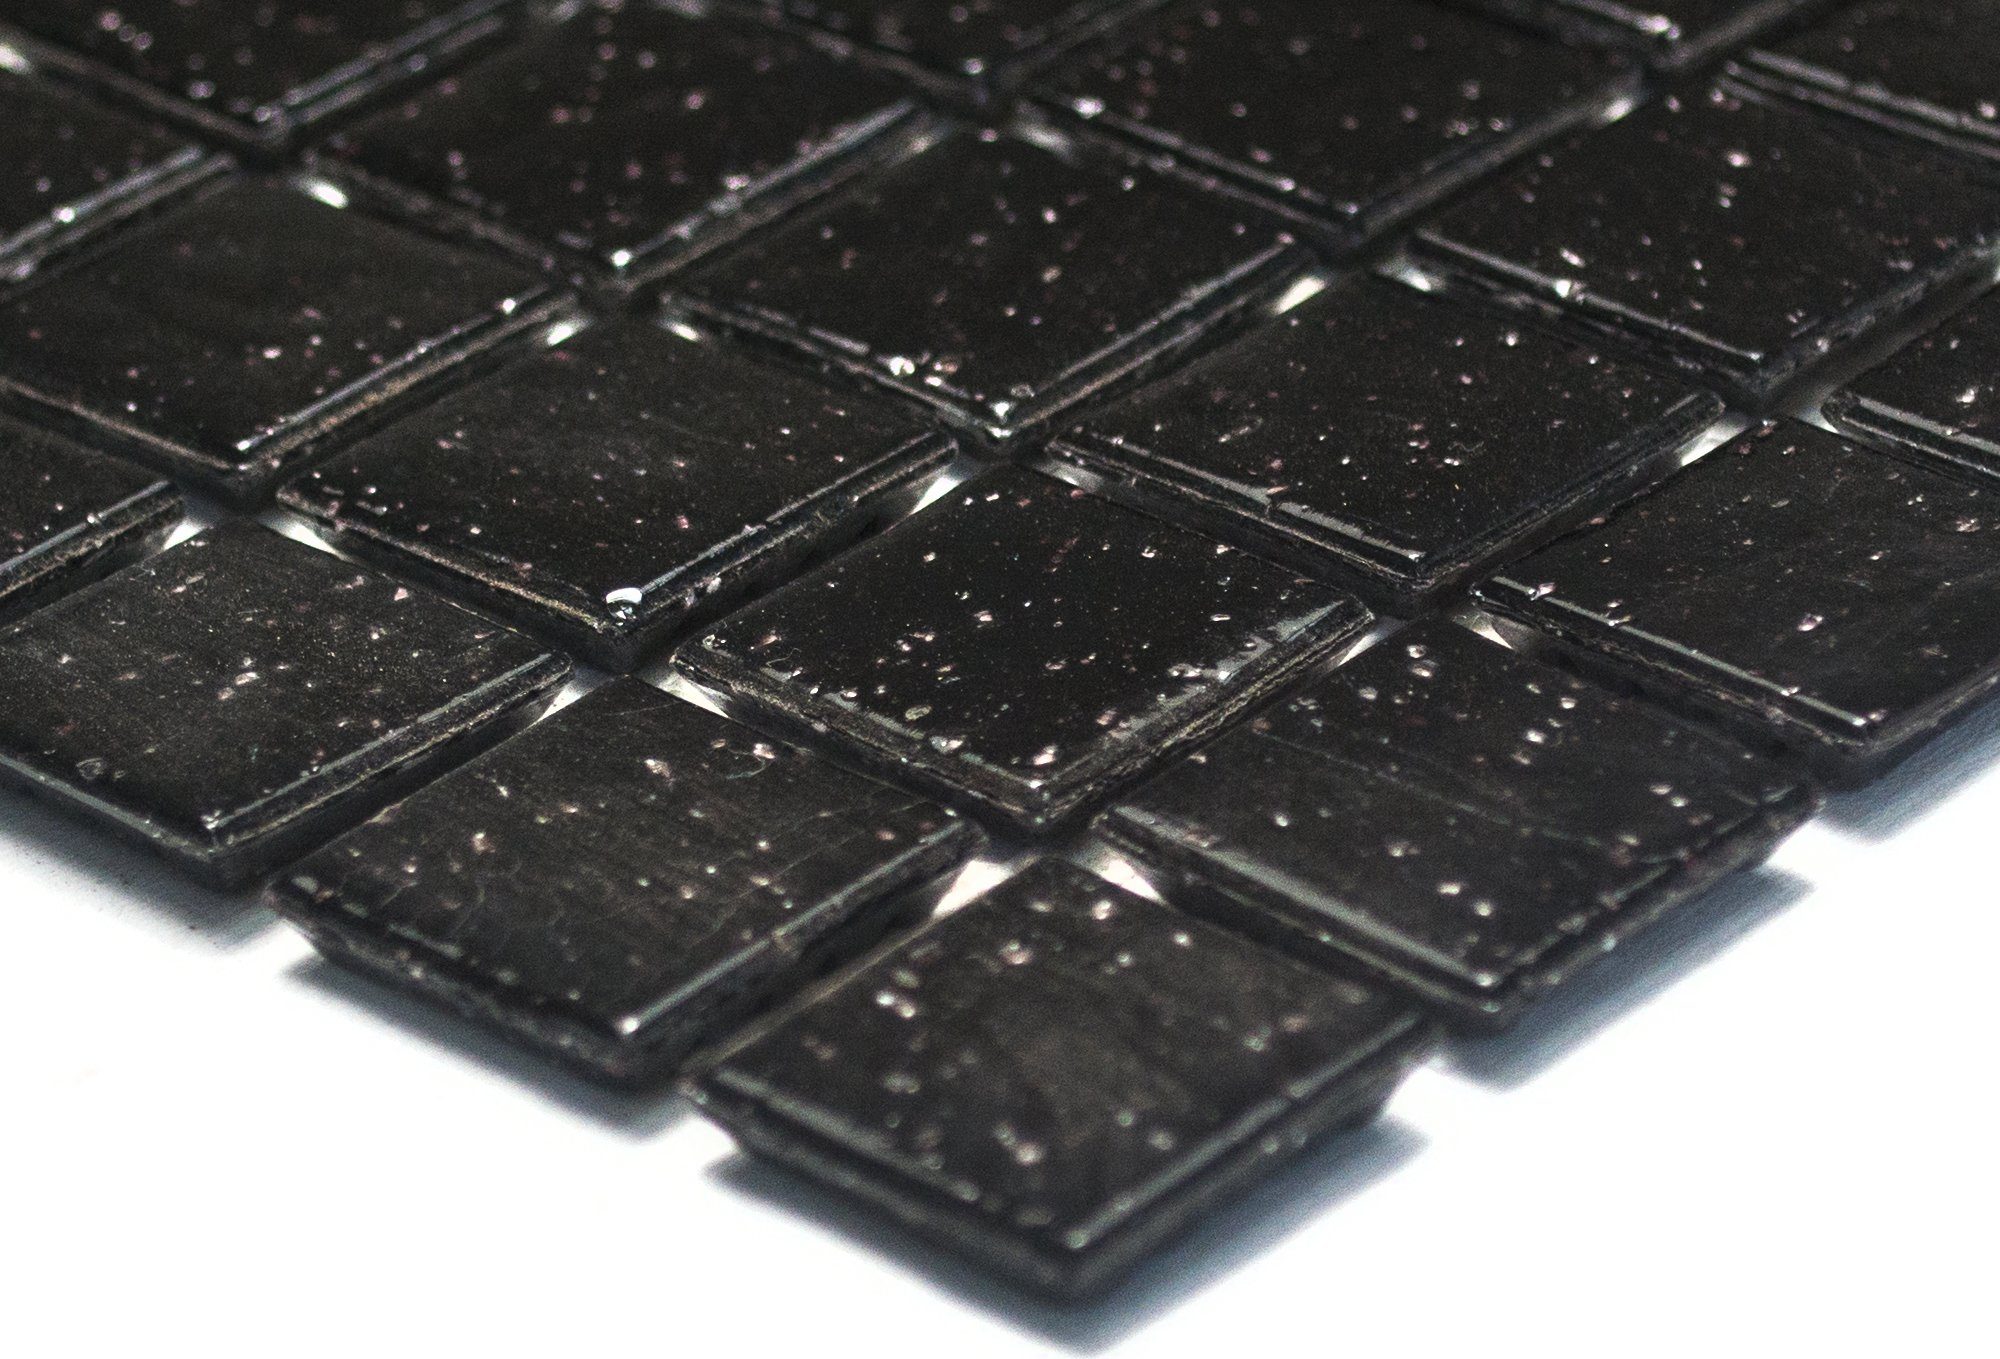 Mosani Bodenfliese BAD Schwarz Küchenwand Mosaikfliese Spots Dusche WAND Glasmosaik